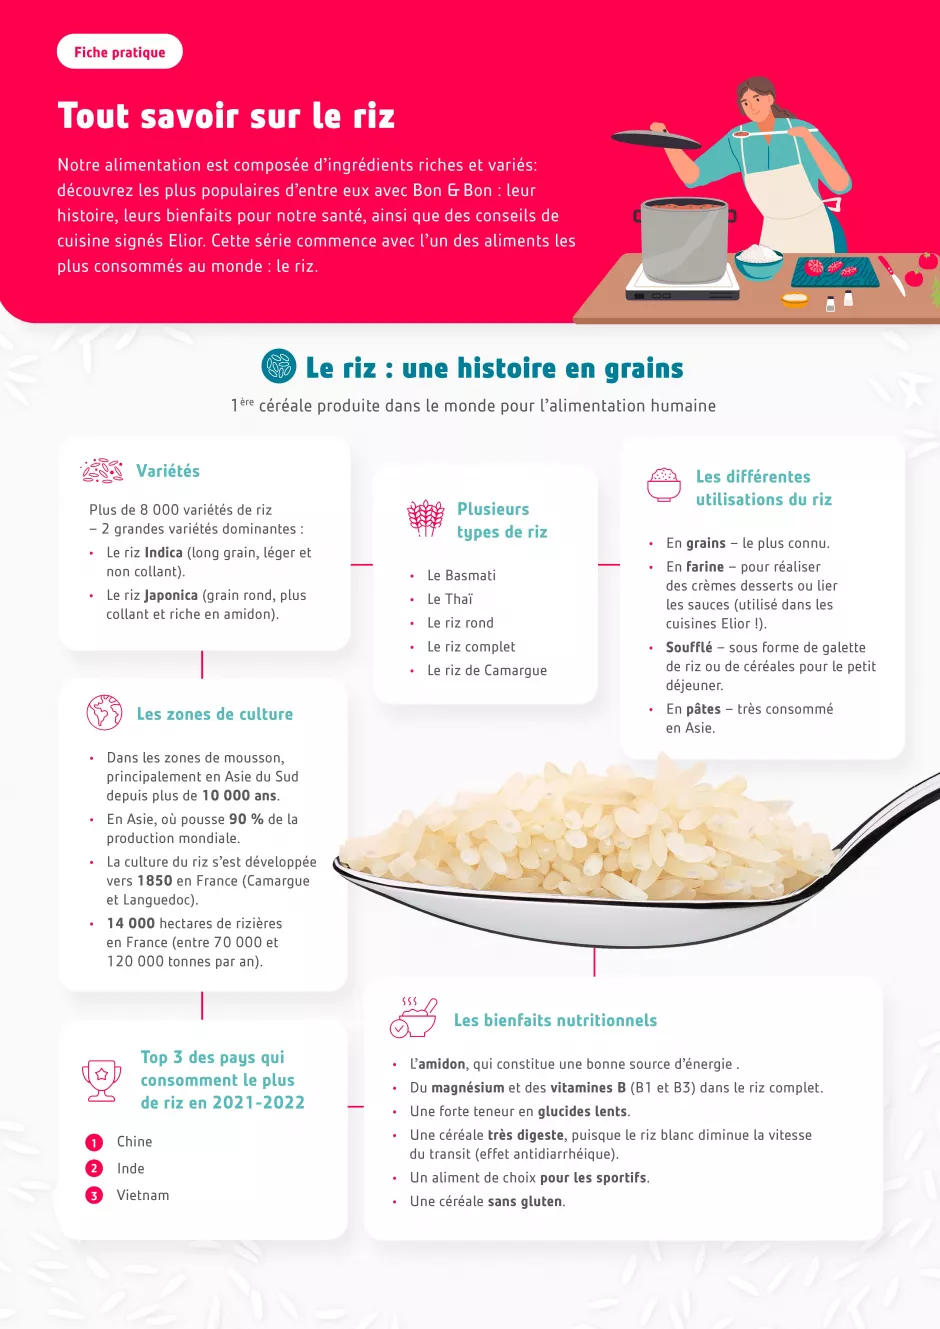 Tout savoir sur le riz